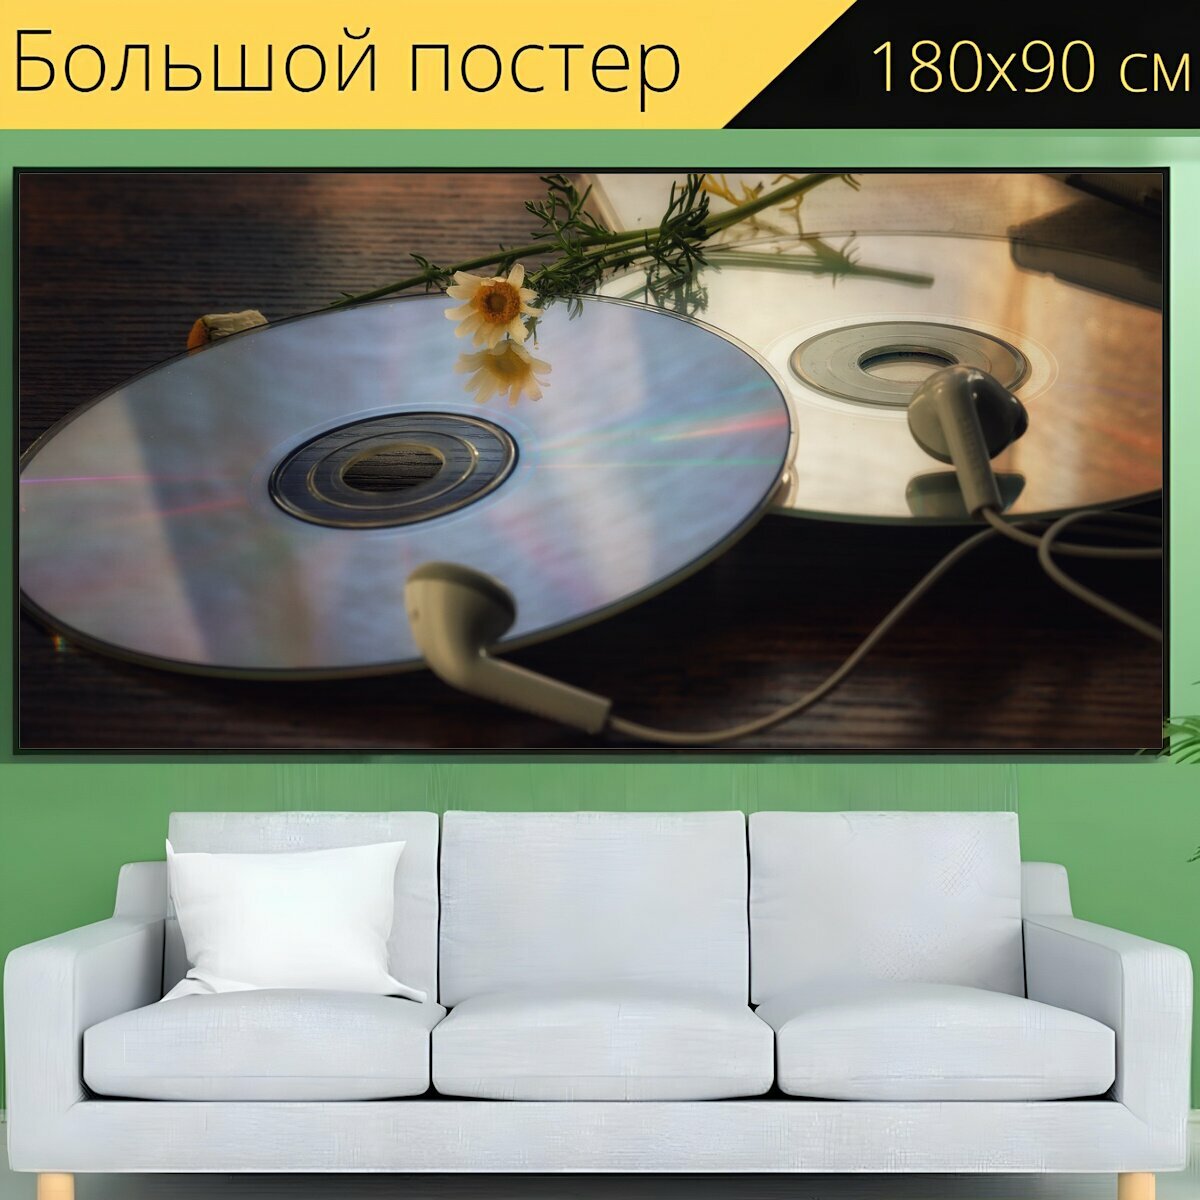 Большой постер "Музыка, дискотека, компакт диск" 180 x 90 см. для интерьера